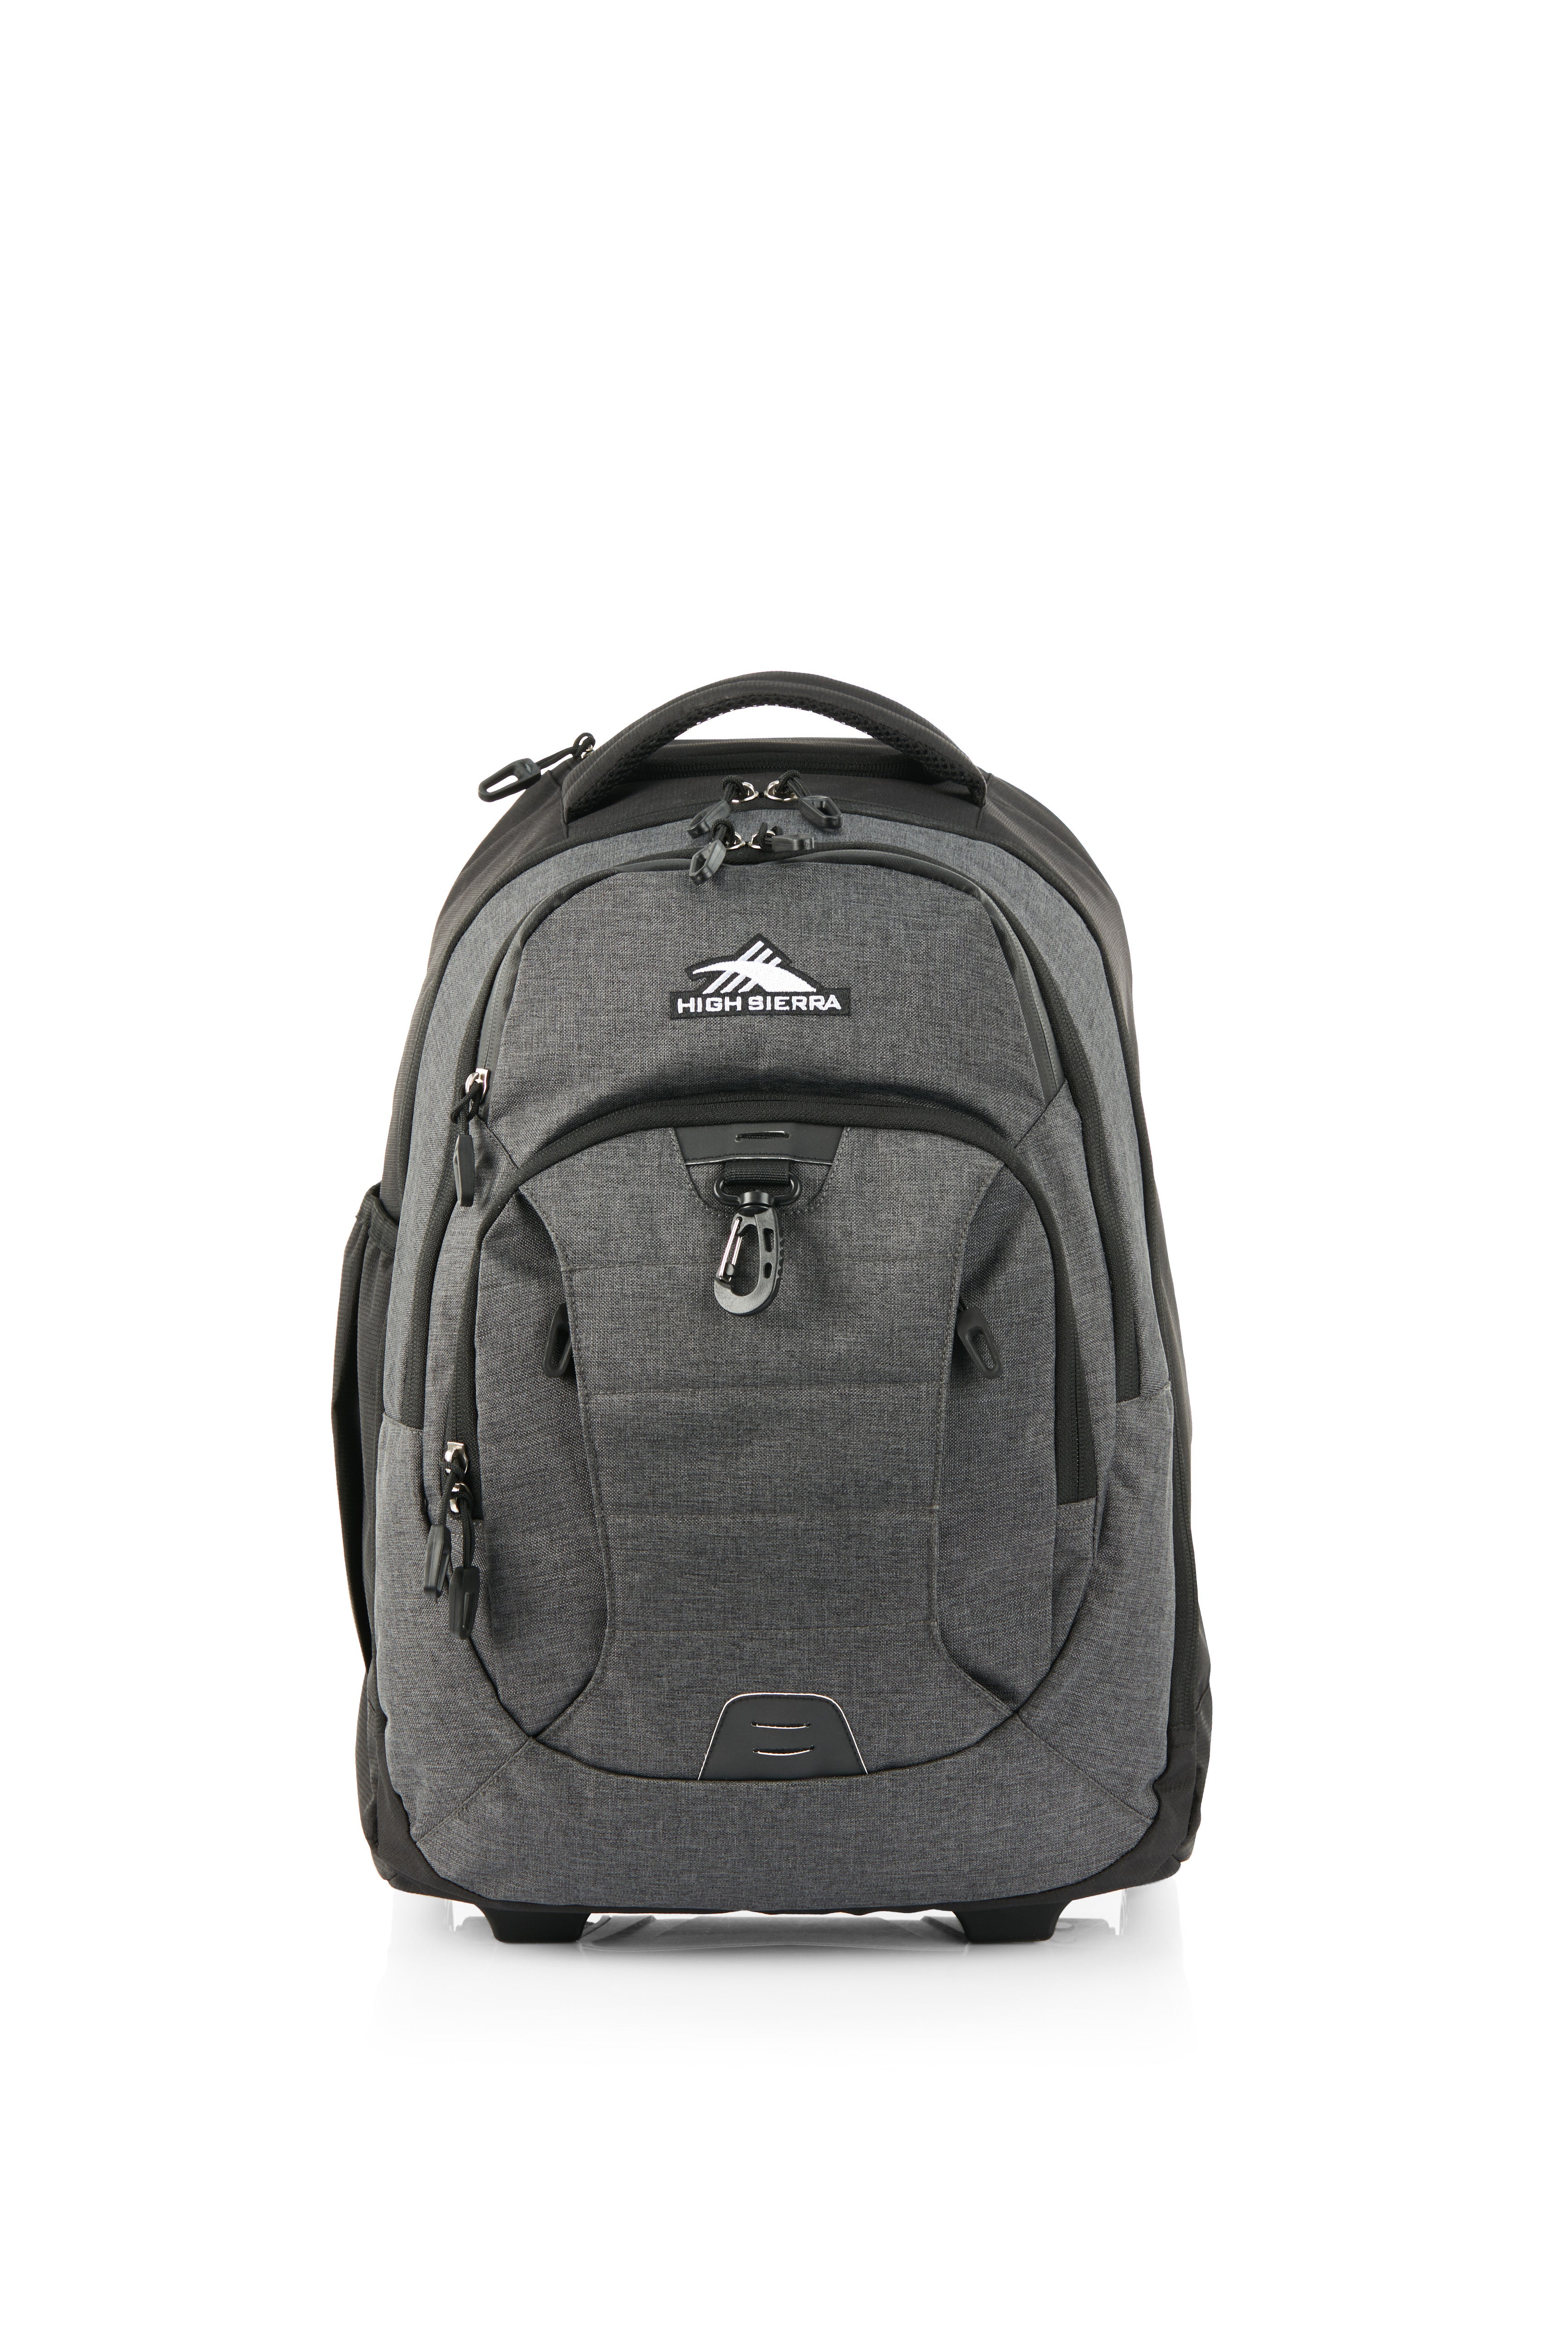 High Sierra - Jarvis Pro backpack on wheels - Black